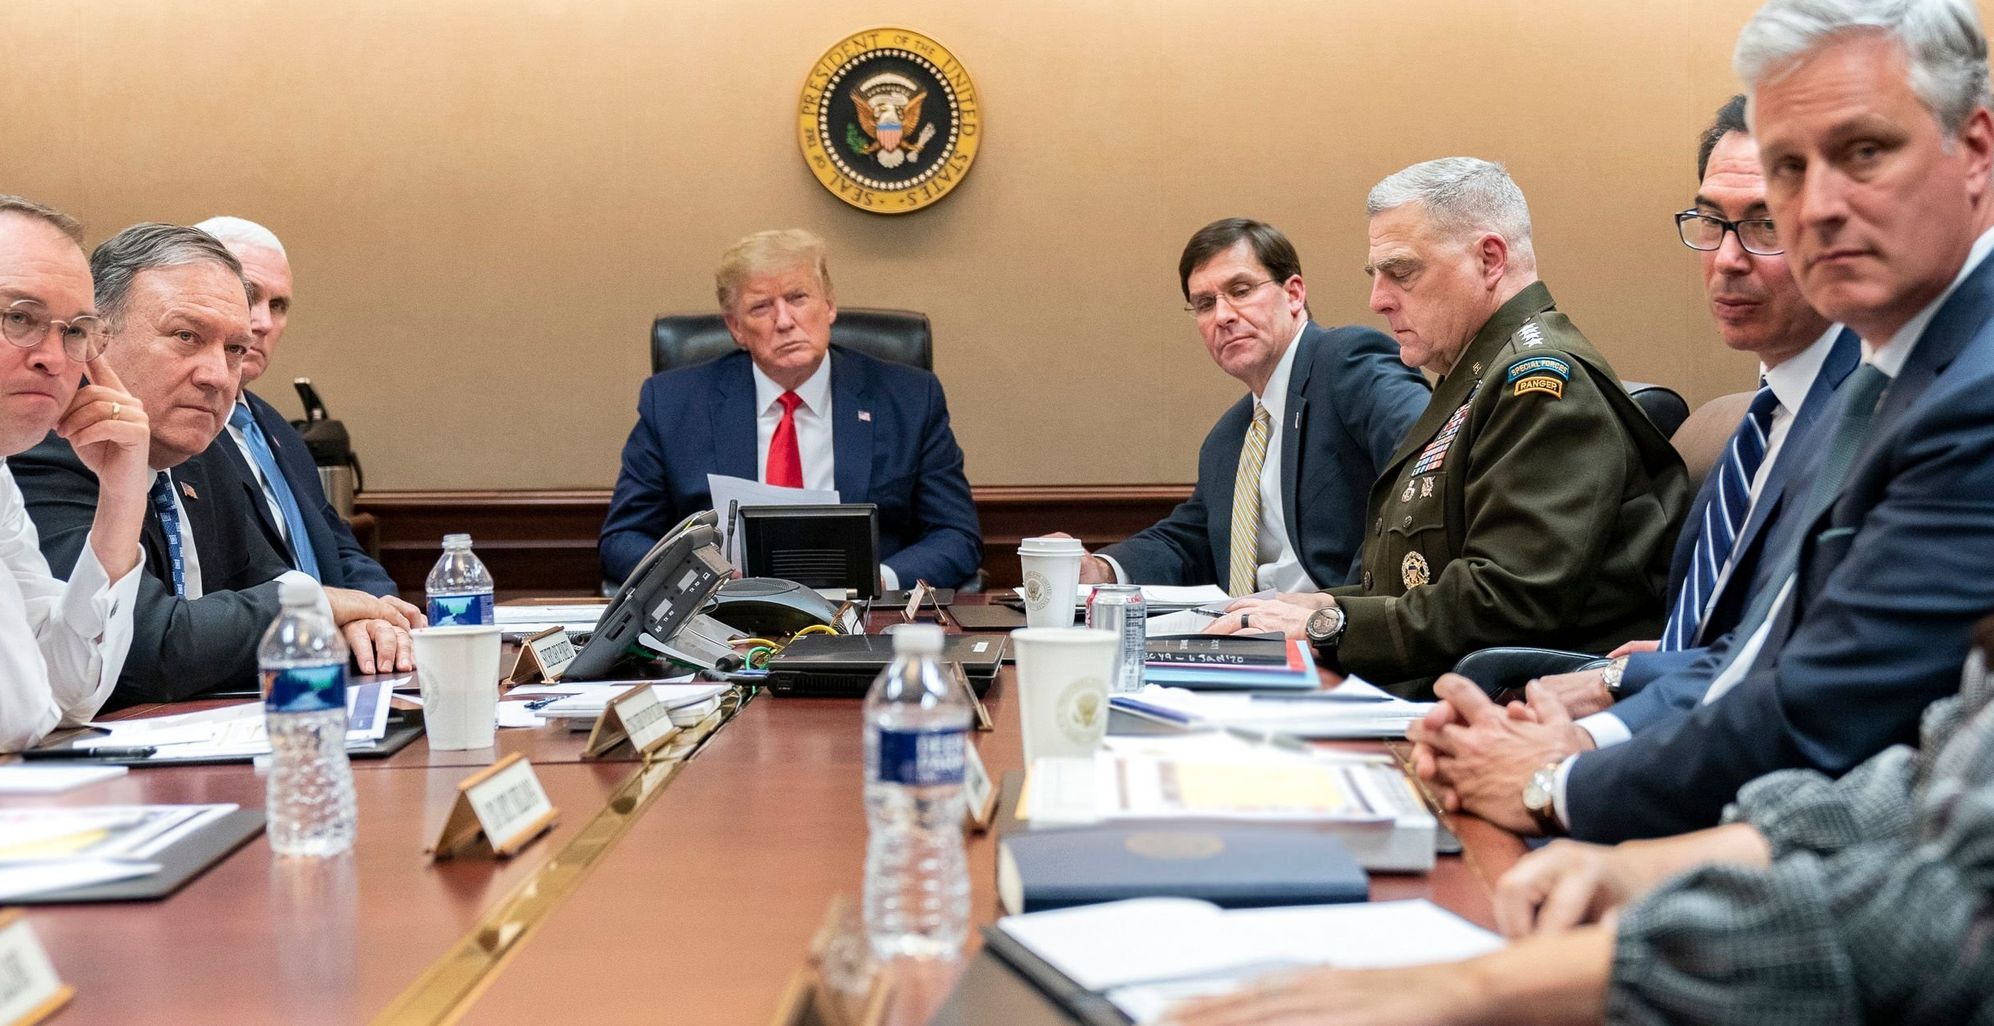 Trump-situation-room-meeting.jpg